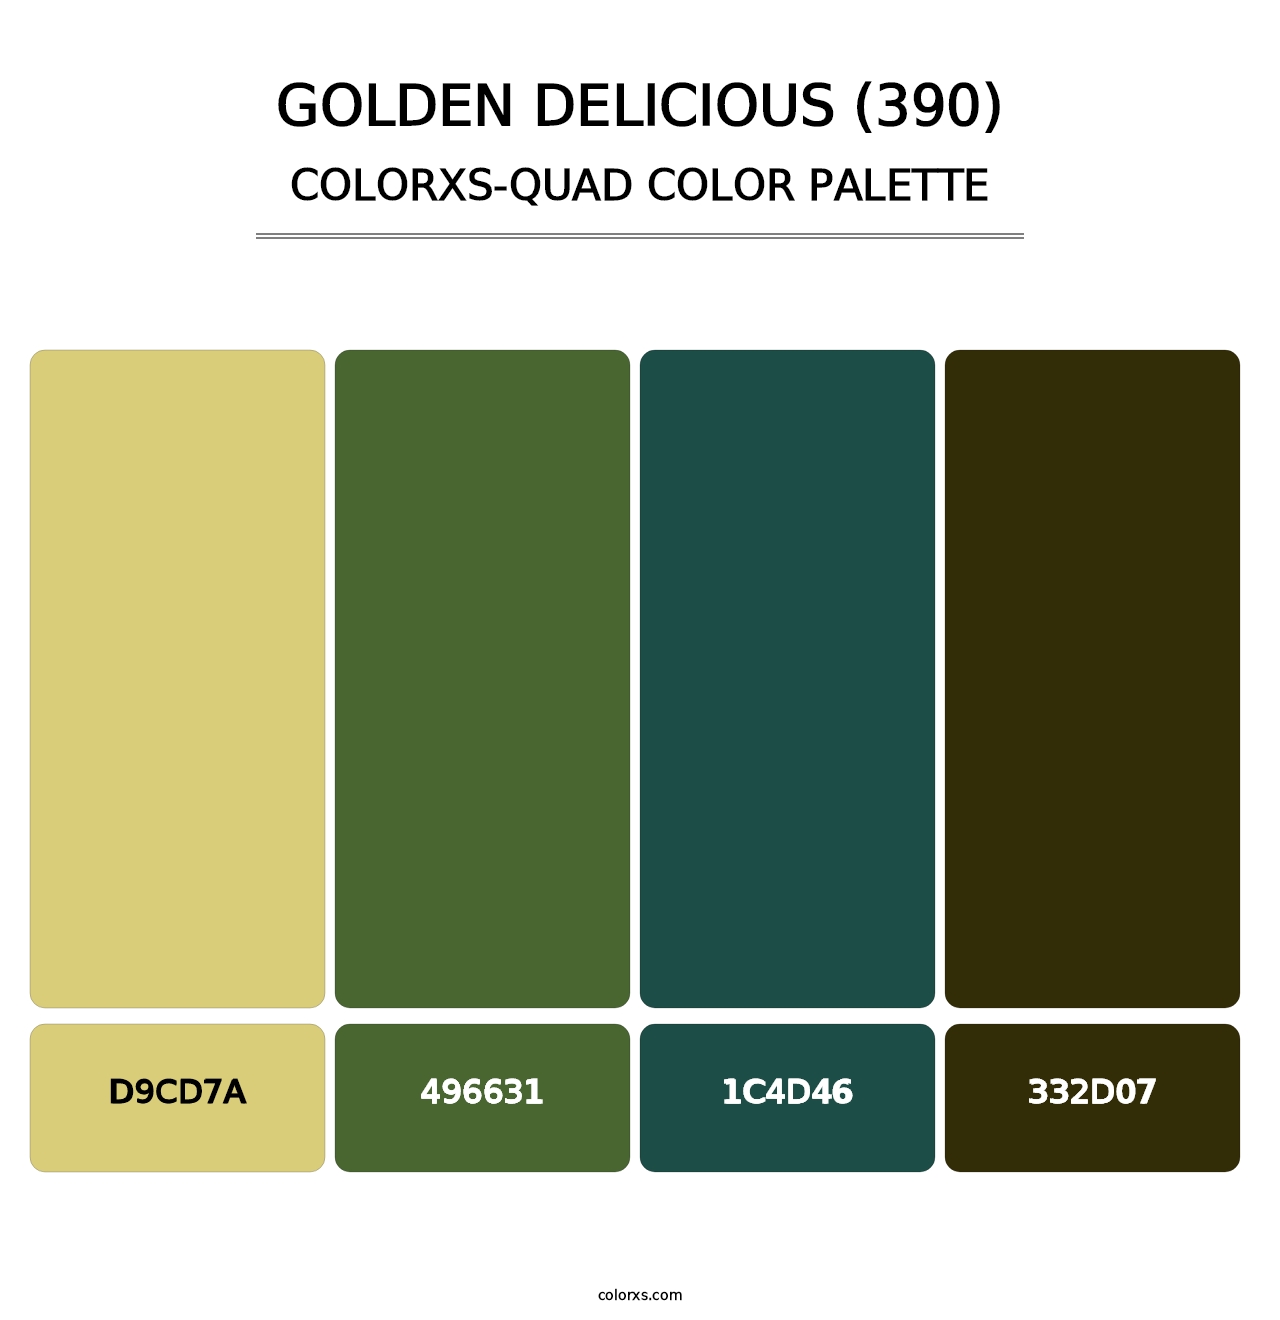 Golden Delicious (390) - Colorxs Quad Palette